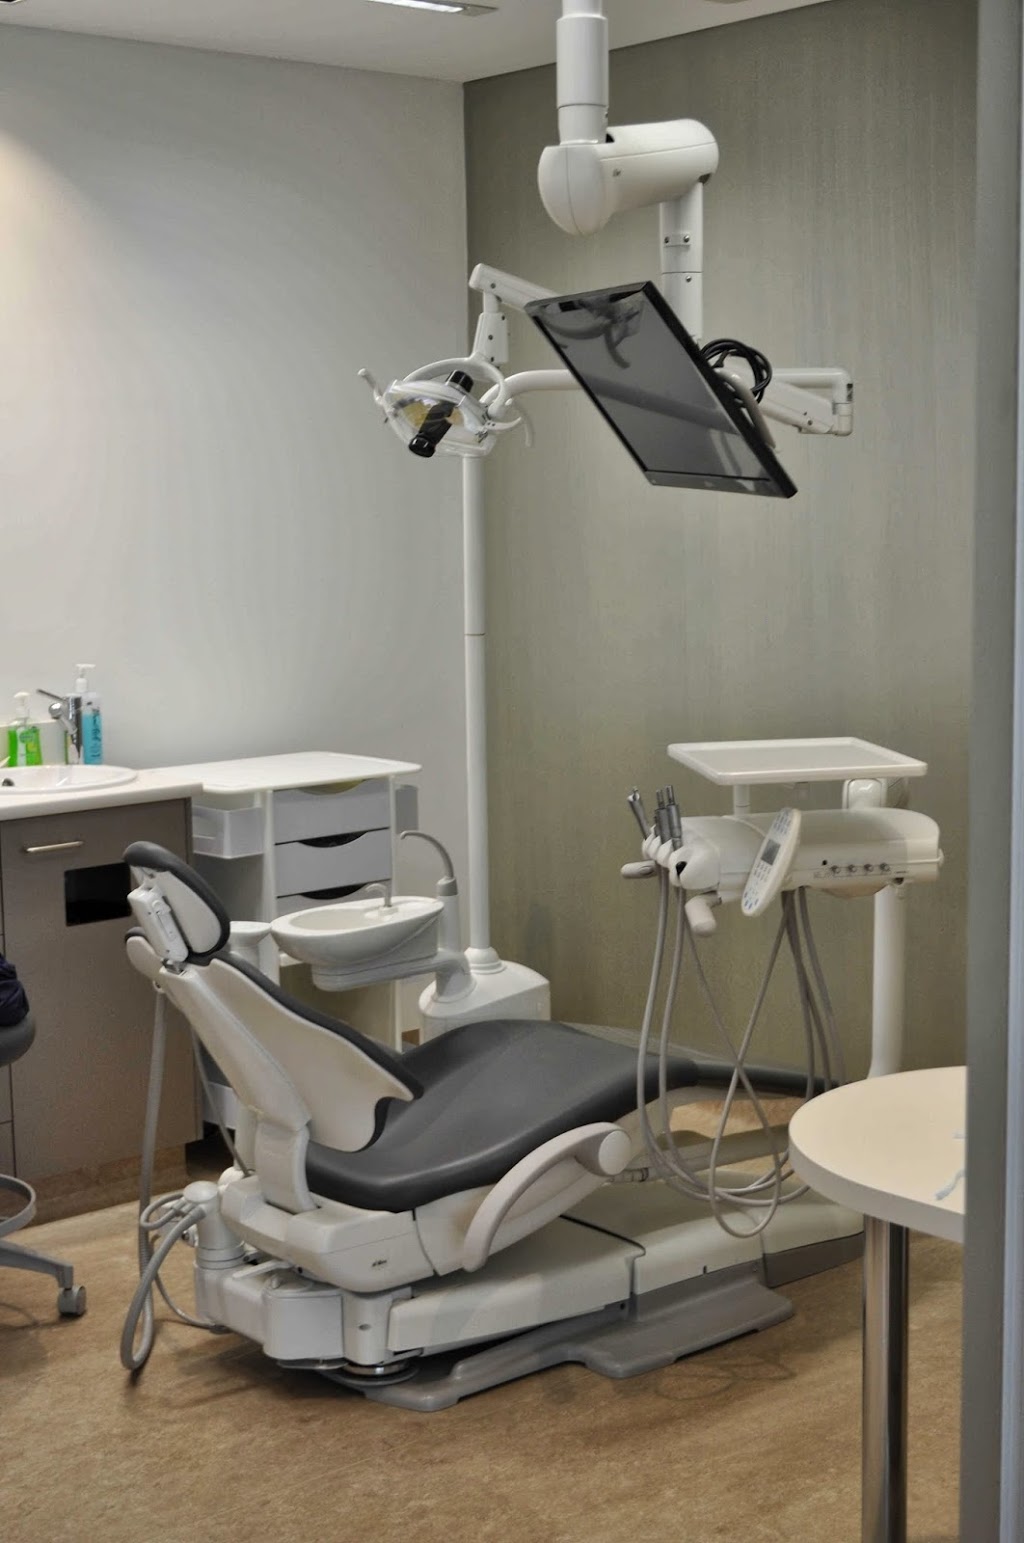 Arawatta Dental Centre | dentist | 40B Koornang Rd, Carnegie VIC 3163, Australia | 0395687484 OR +61 3 9568 7484